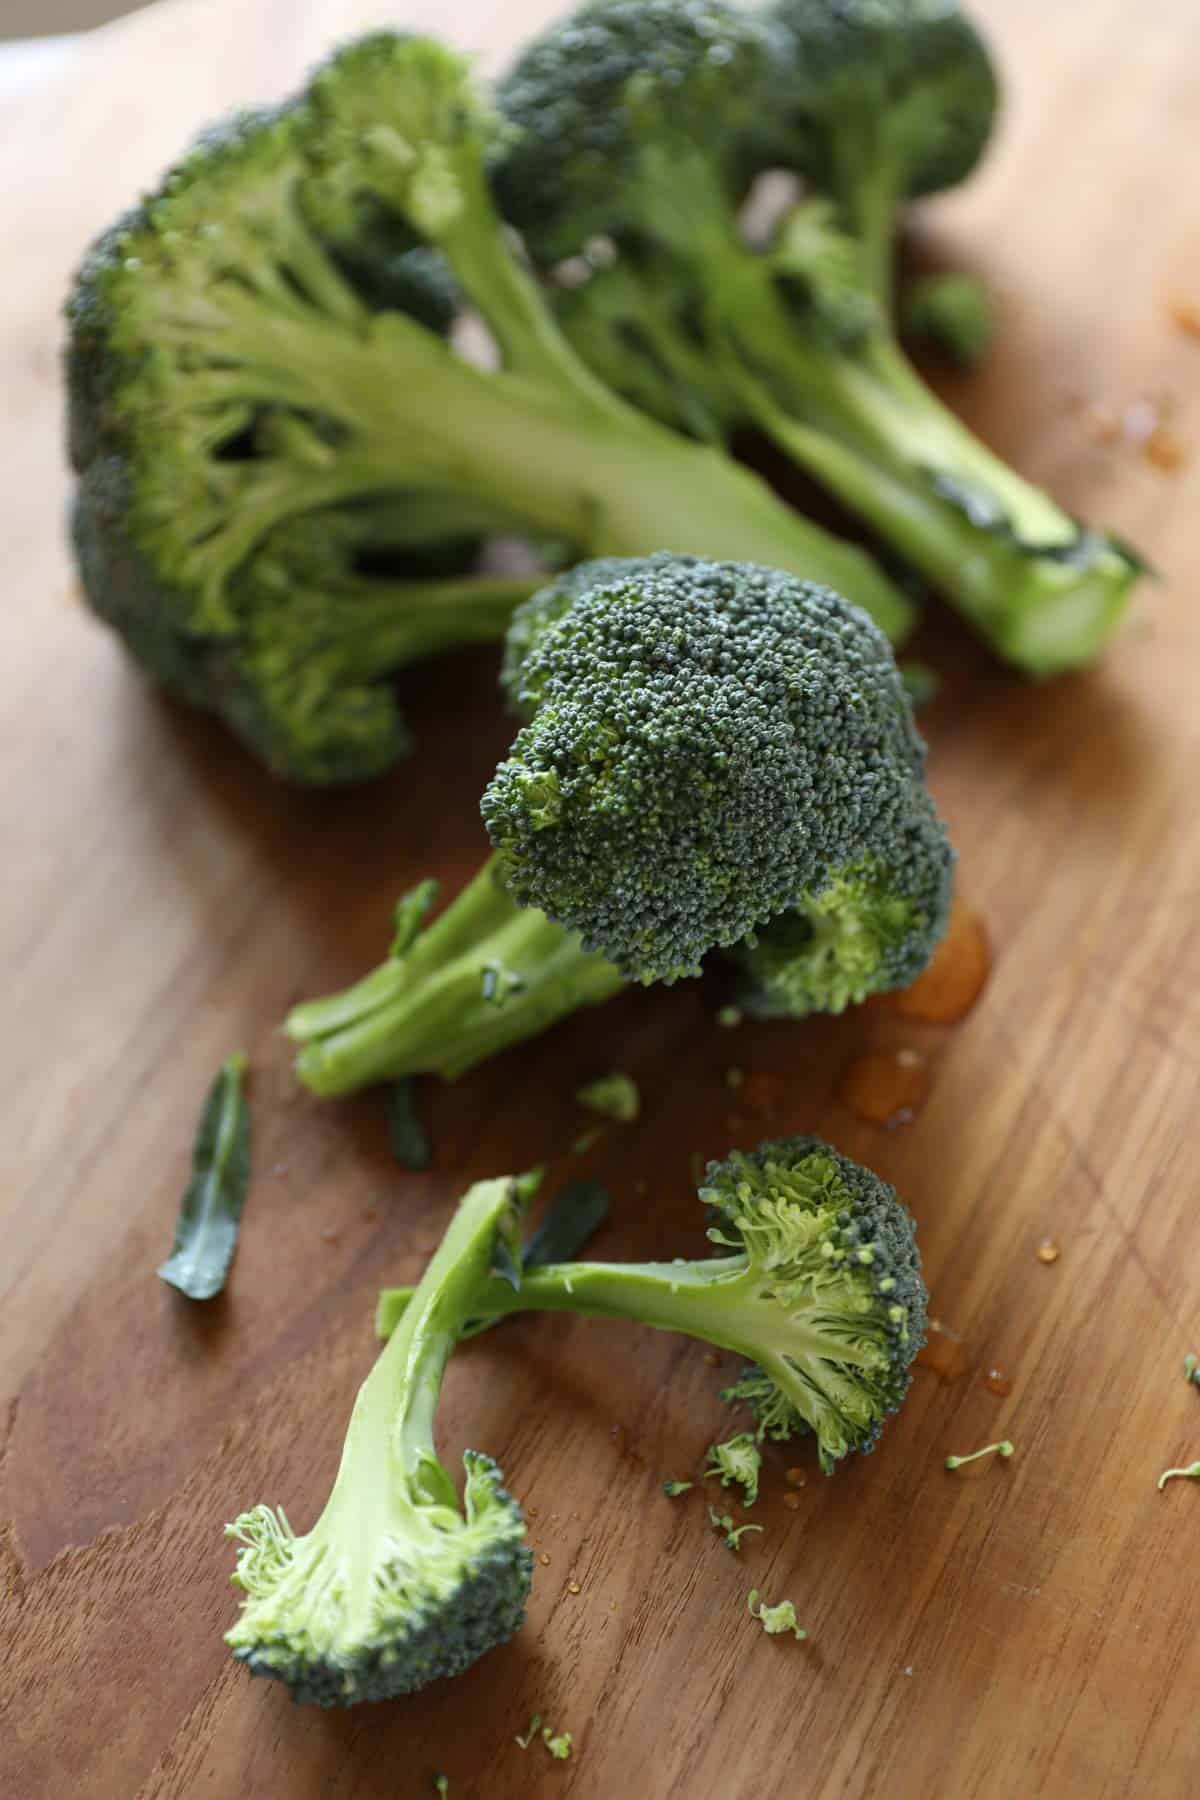 raw broccoli heads on a cutting board